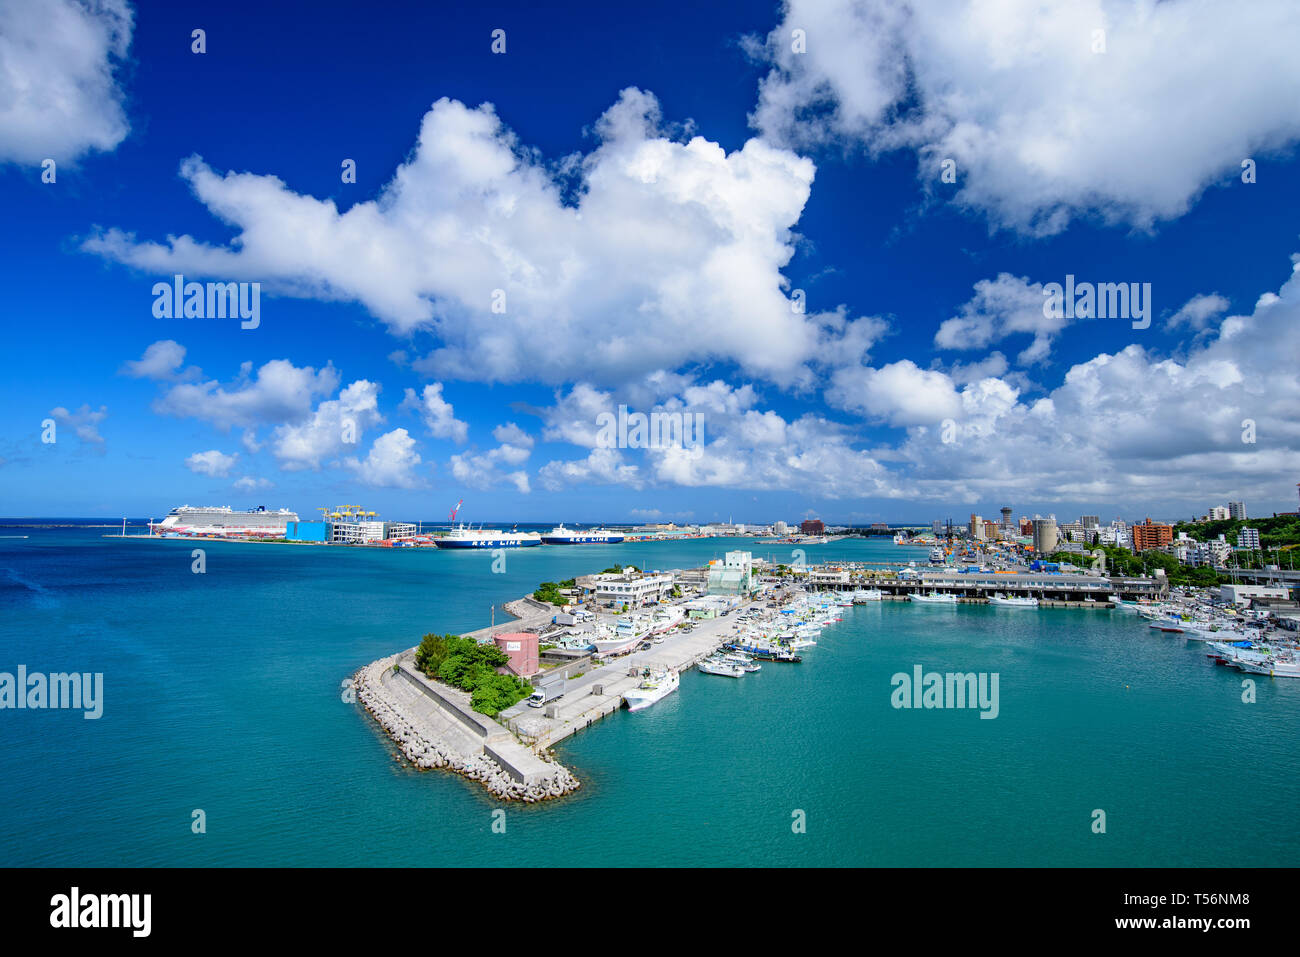 La vue aérienne du port de Naha, Okinawa, Japon Banque D'Images